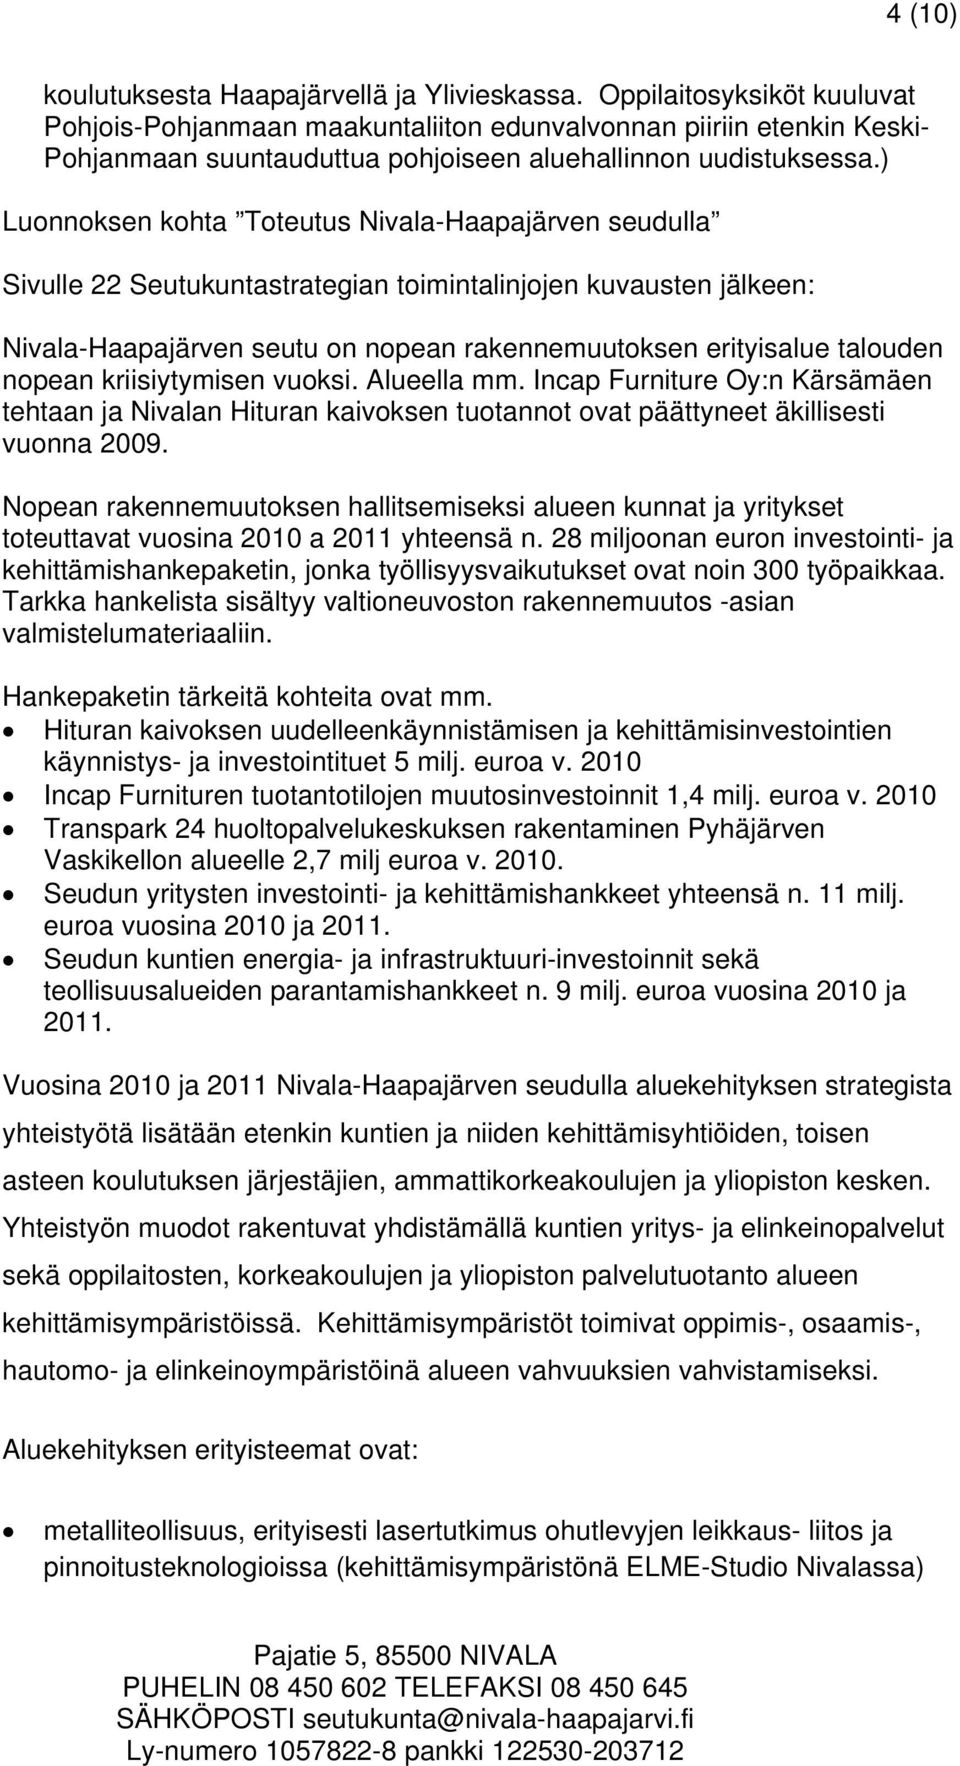 ) Luonnoksen kohta Toteutus Nivala-Haapajärven seudulla Sivulle 22 Seutukuntastrategian toimintalinjojen kuvausten jälkeen: Nivala-Haapajärven seutu on nopean rakennemuutoksen erityisalue talouden